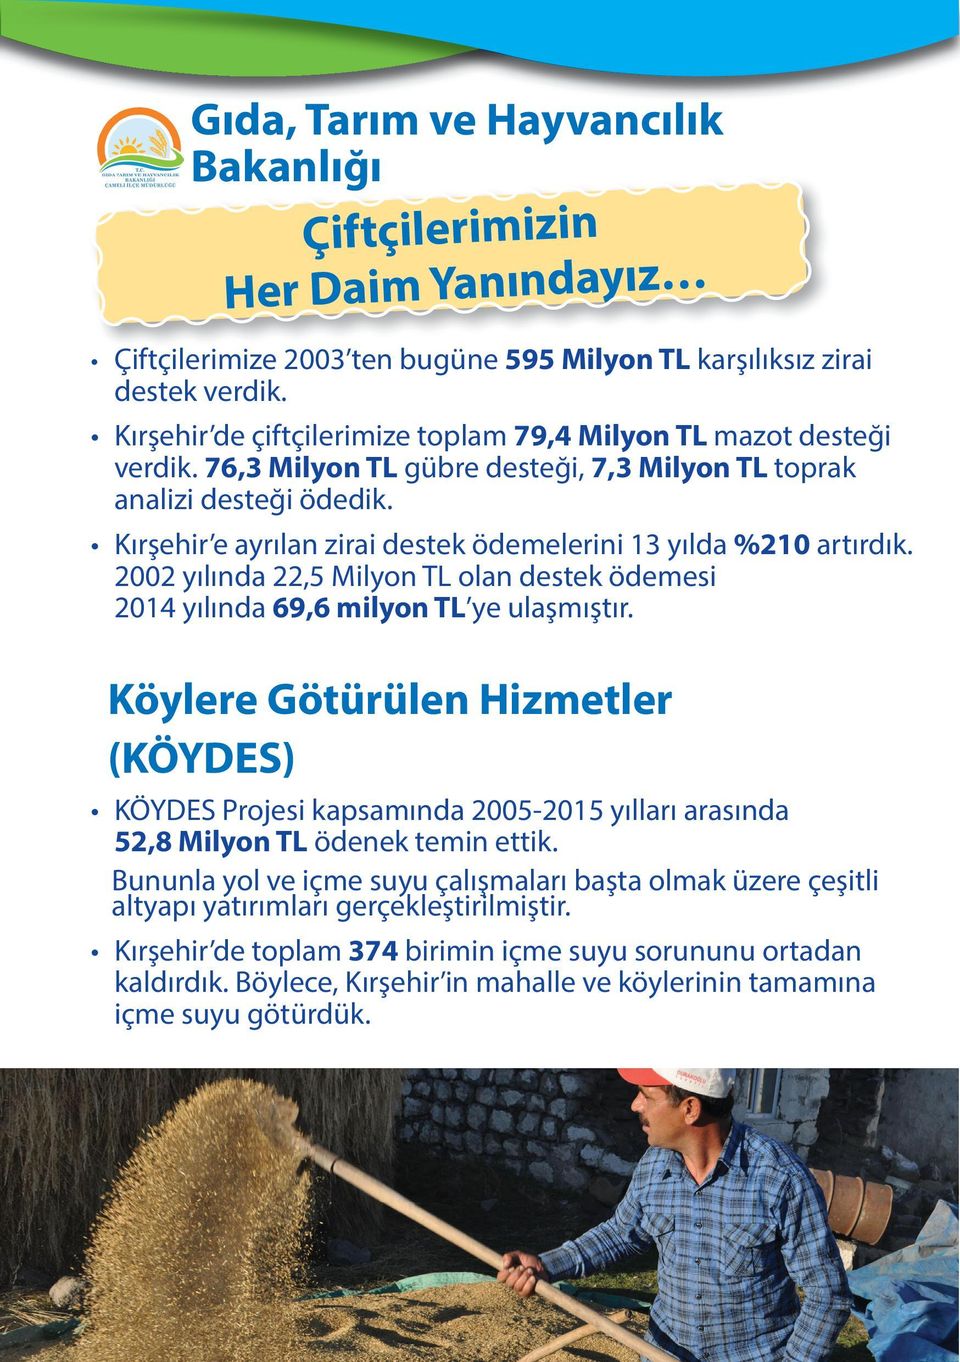 Kırşehir e ayrılan zirai destek ödemelerini 13 yılda %210 artırdık. 2002 yılında 22,5 Milyon TL olan destek ödemesi 2014 yılında 69,6 milyon TL ye ulaşmıştır.